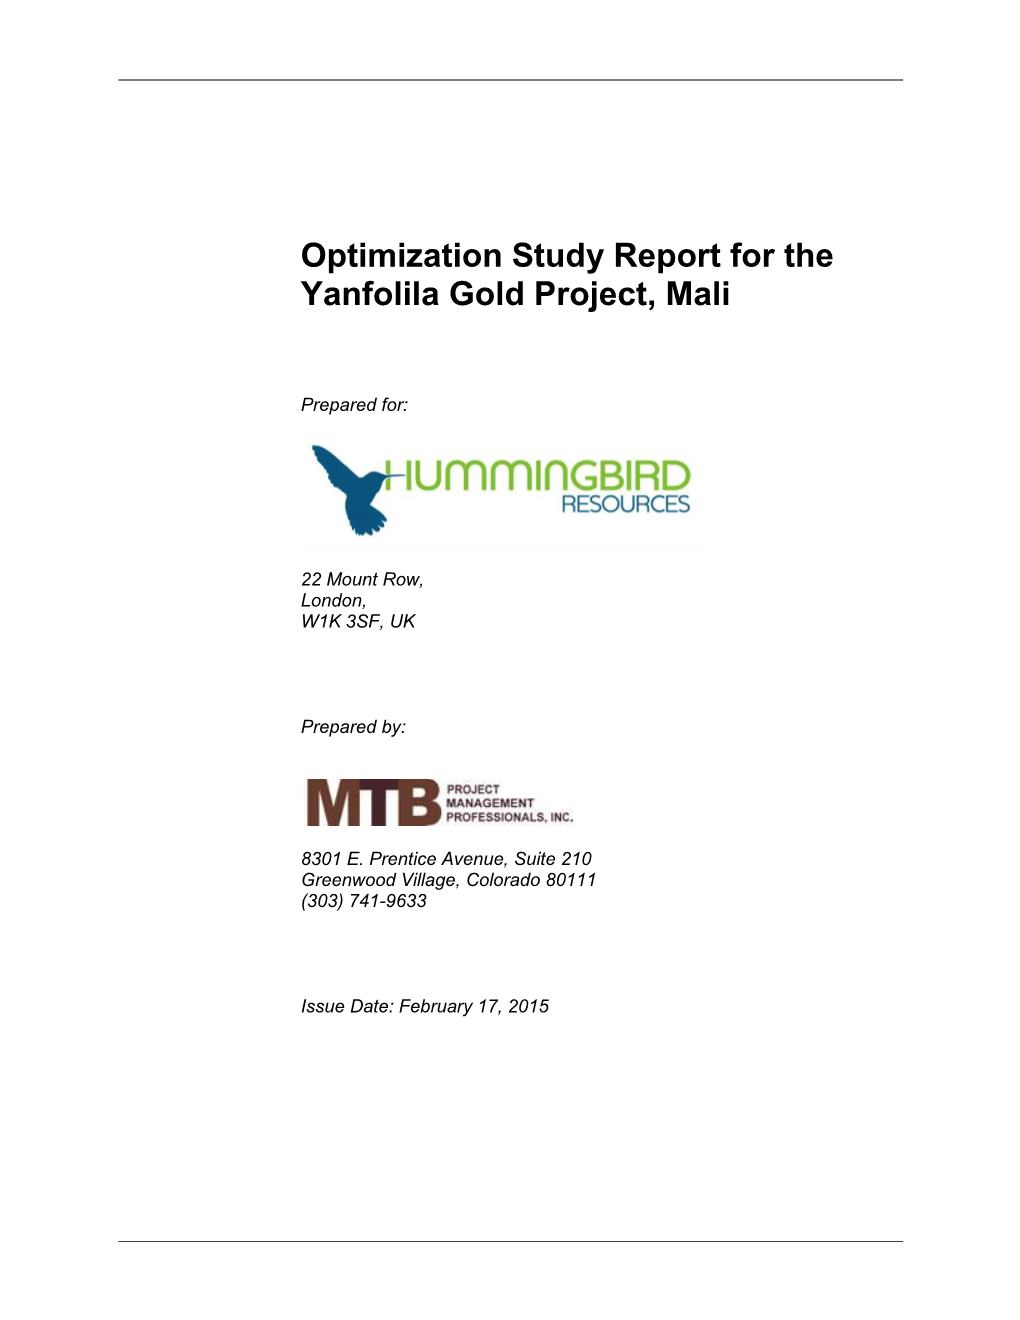 Optimization Study Report for the Yanfolila Gold Project, Mali